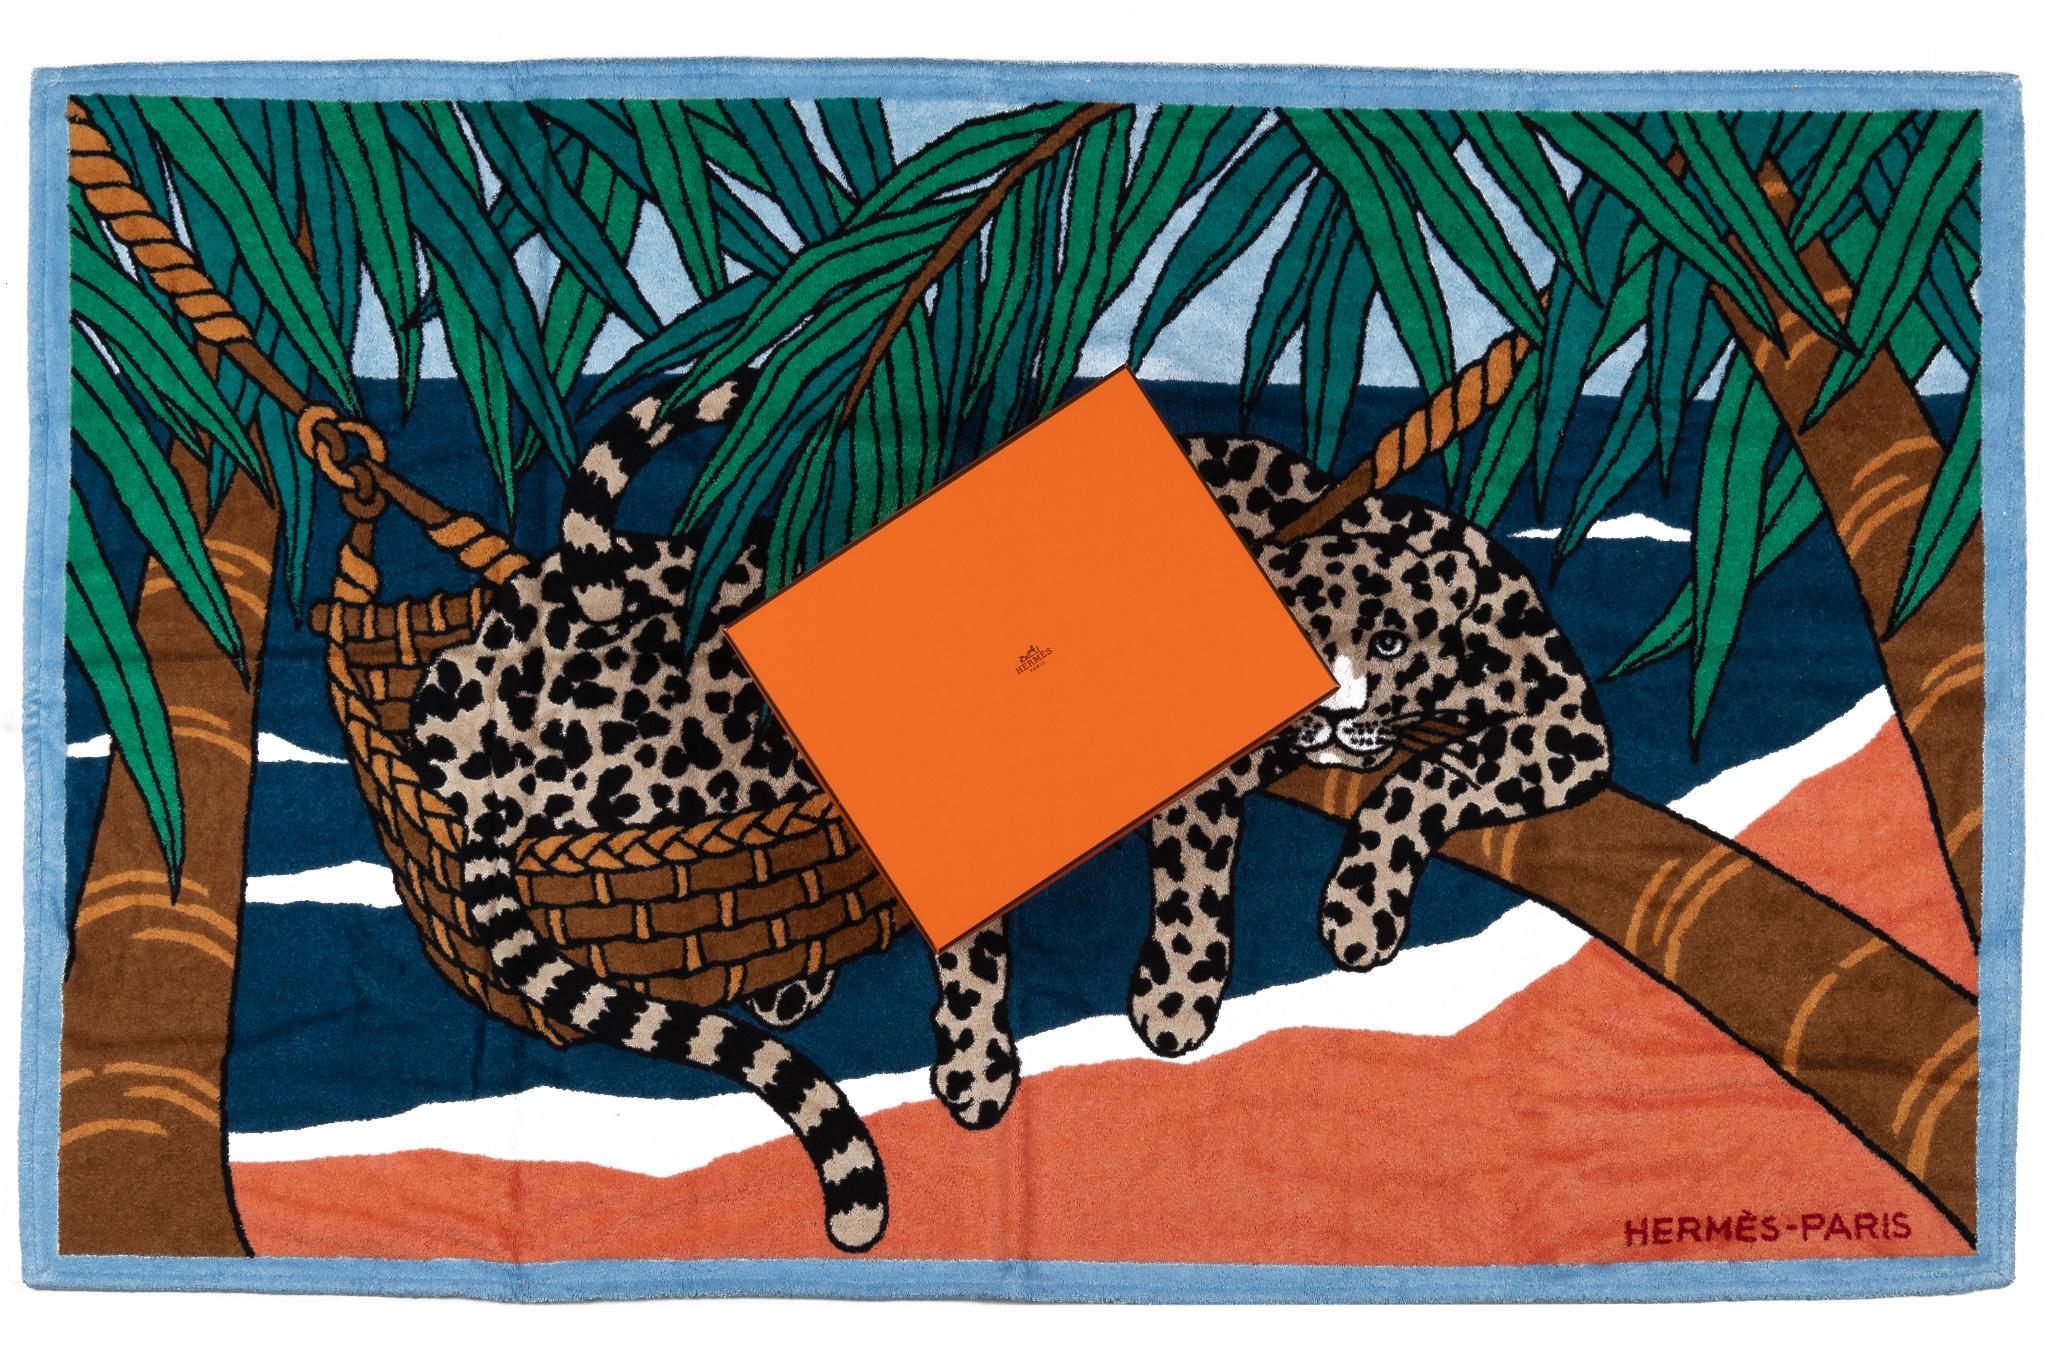 Hermès Leopard Strandtuch in grün und blau. Das Muster zeigt zwei blaue Leoparden in einer Hängematte. Der Artikel ist neu und kommt mit der Box.